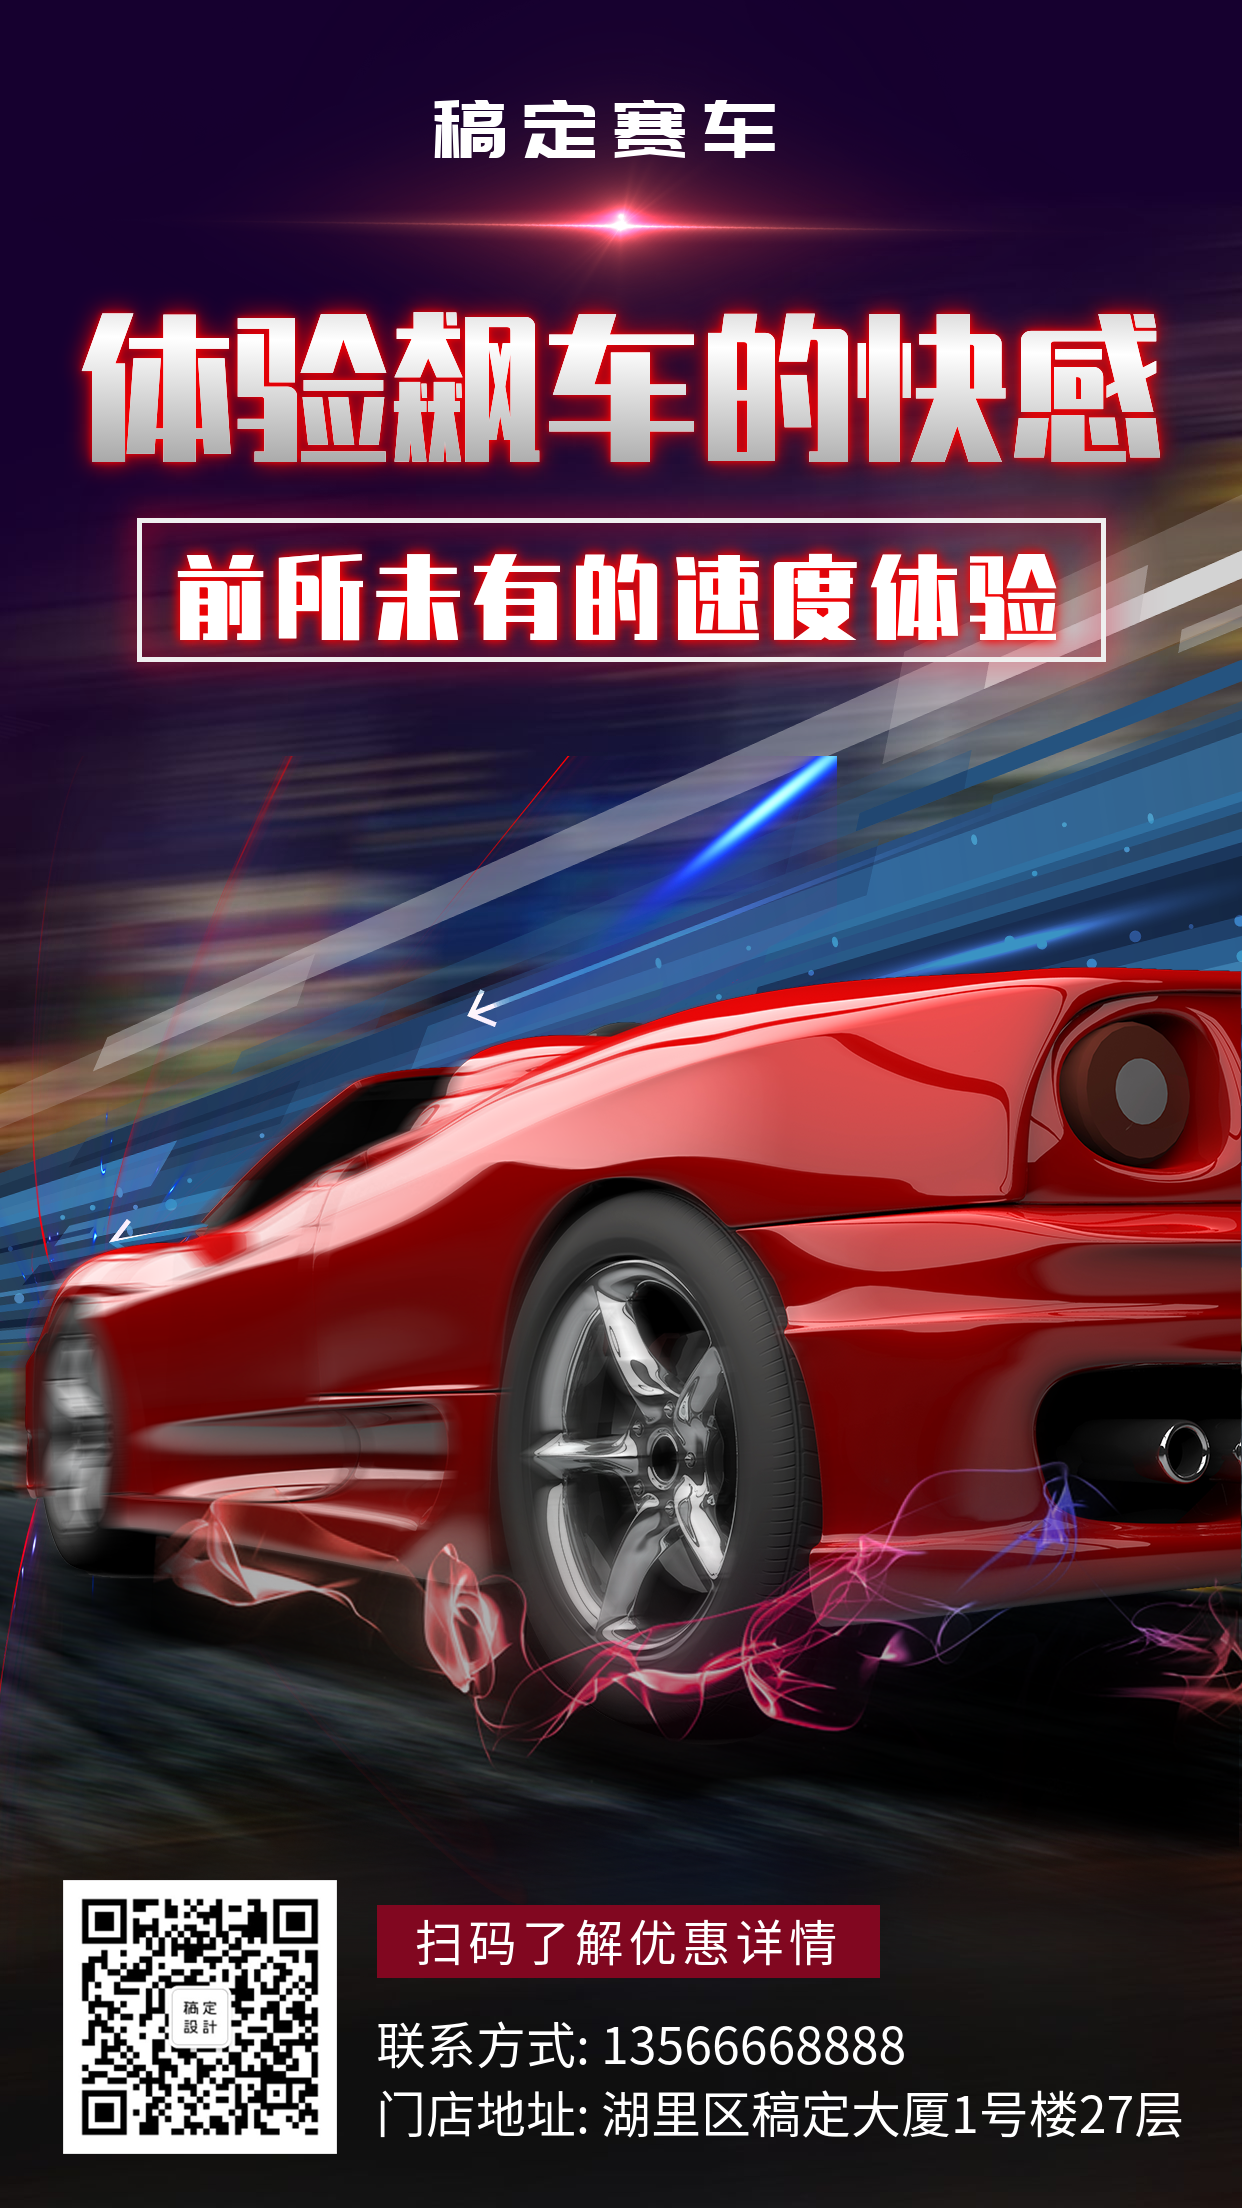 赛车酷炫产品推广手机海报预览效果